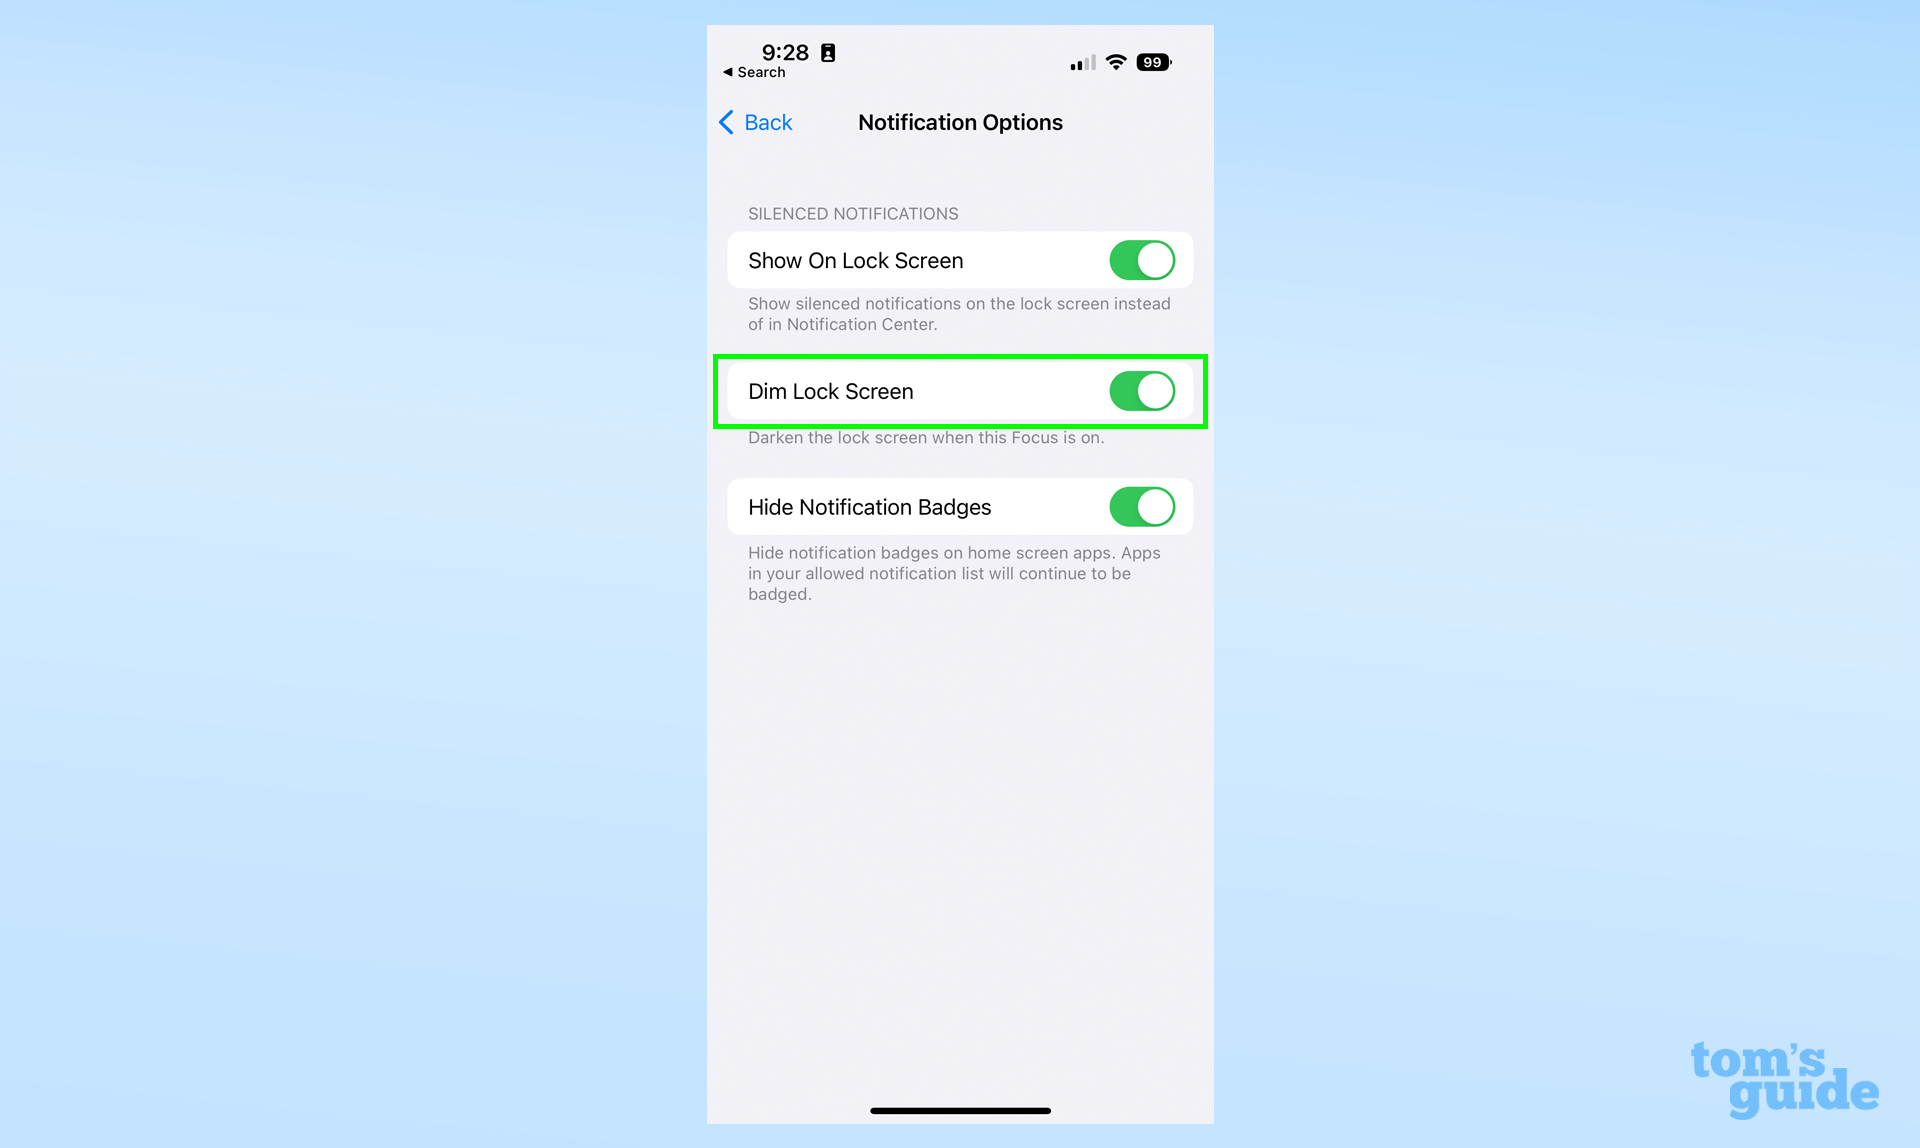 Скриншот приложения настроек iOS, показывающий, где найти параметр Dim Lock Screen.